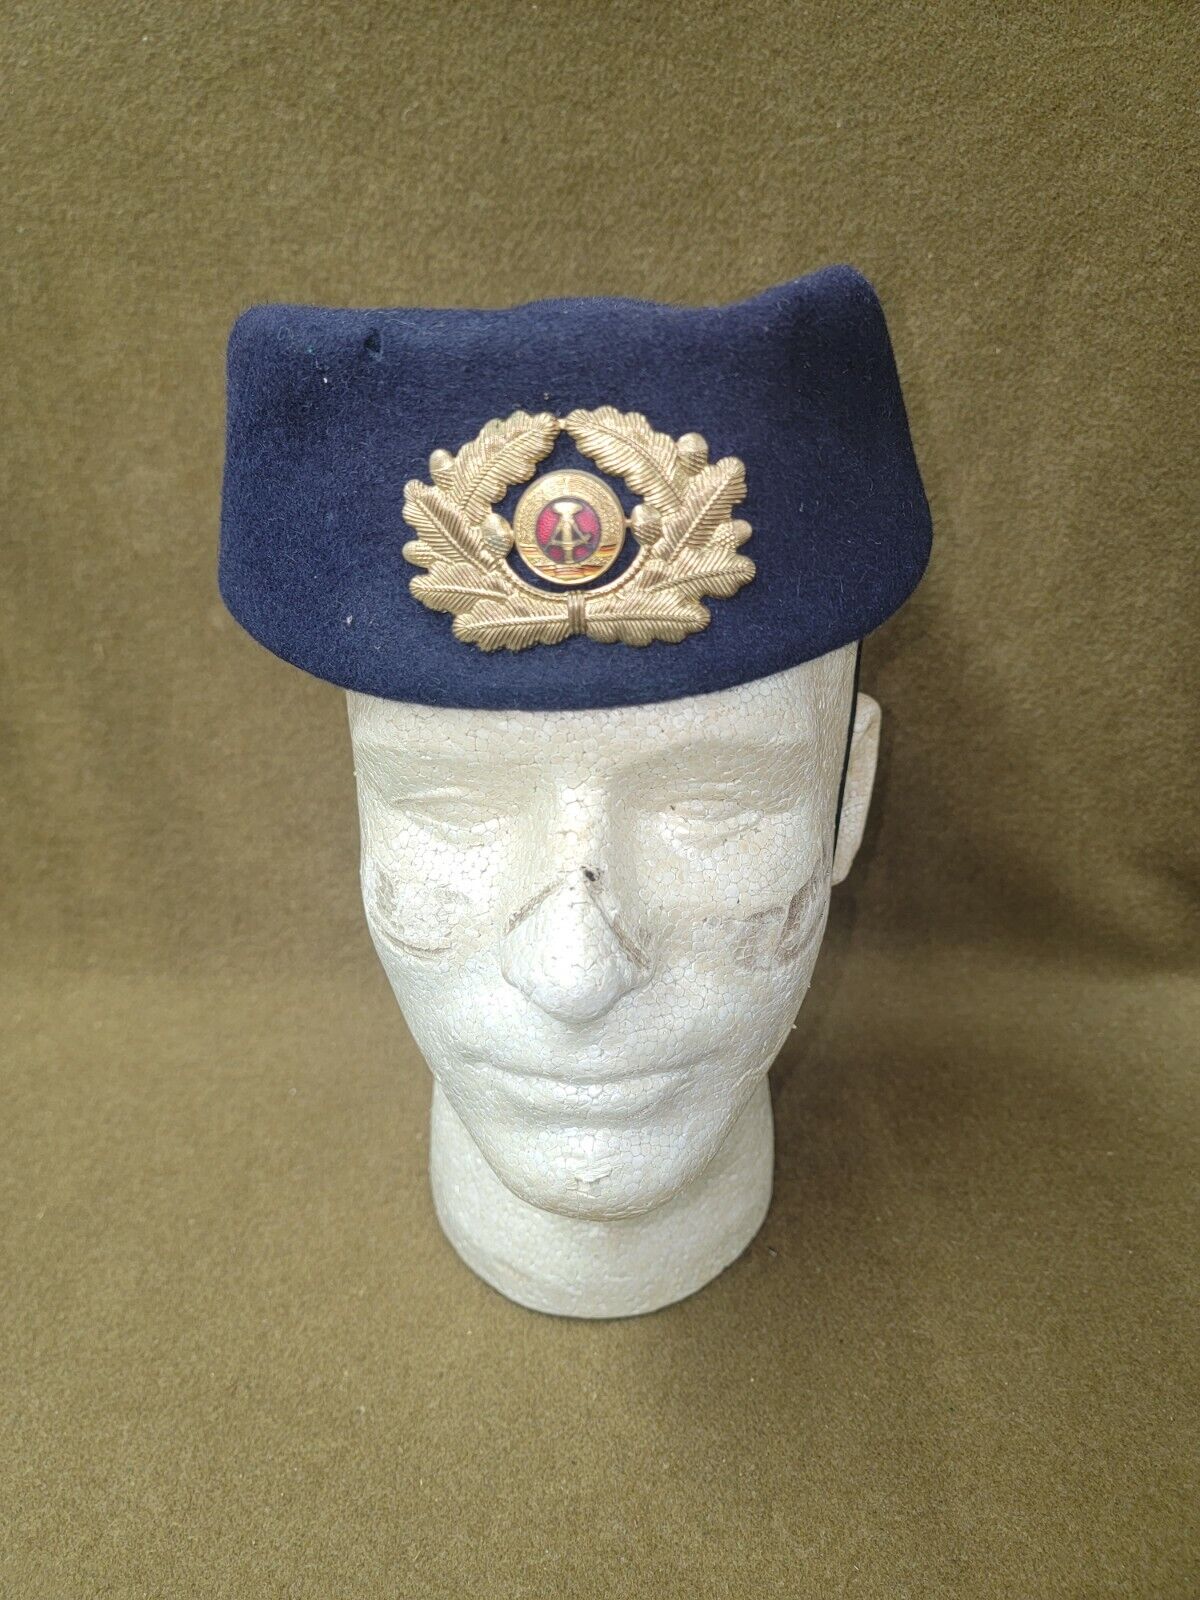 East German Police Pillbox Cap